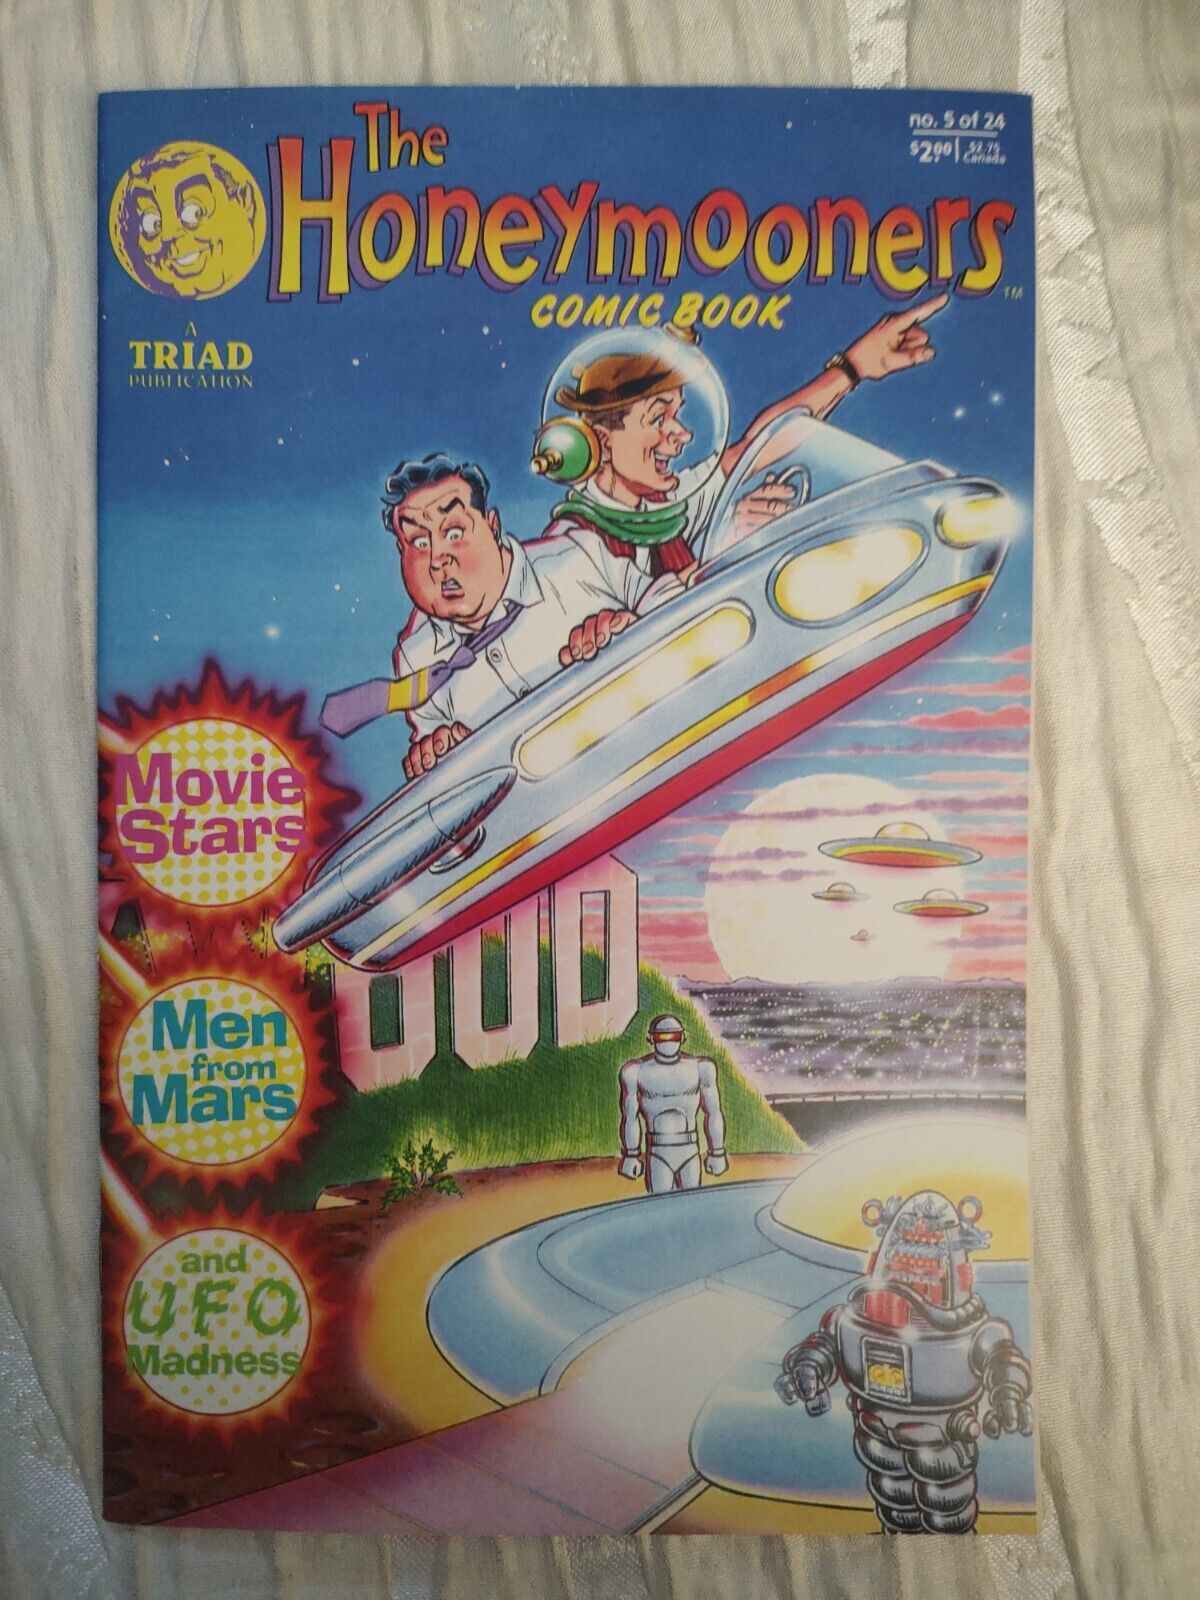 Cb26~comic book~rare the honeymooner's men from Mars UFO madness